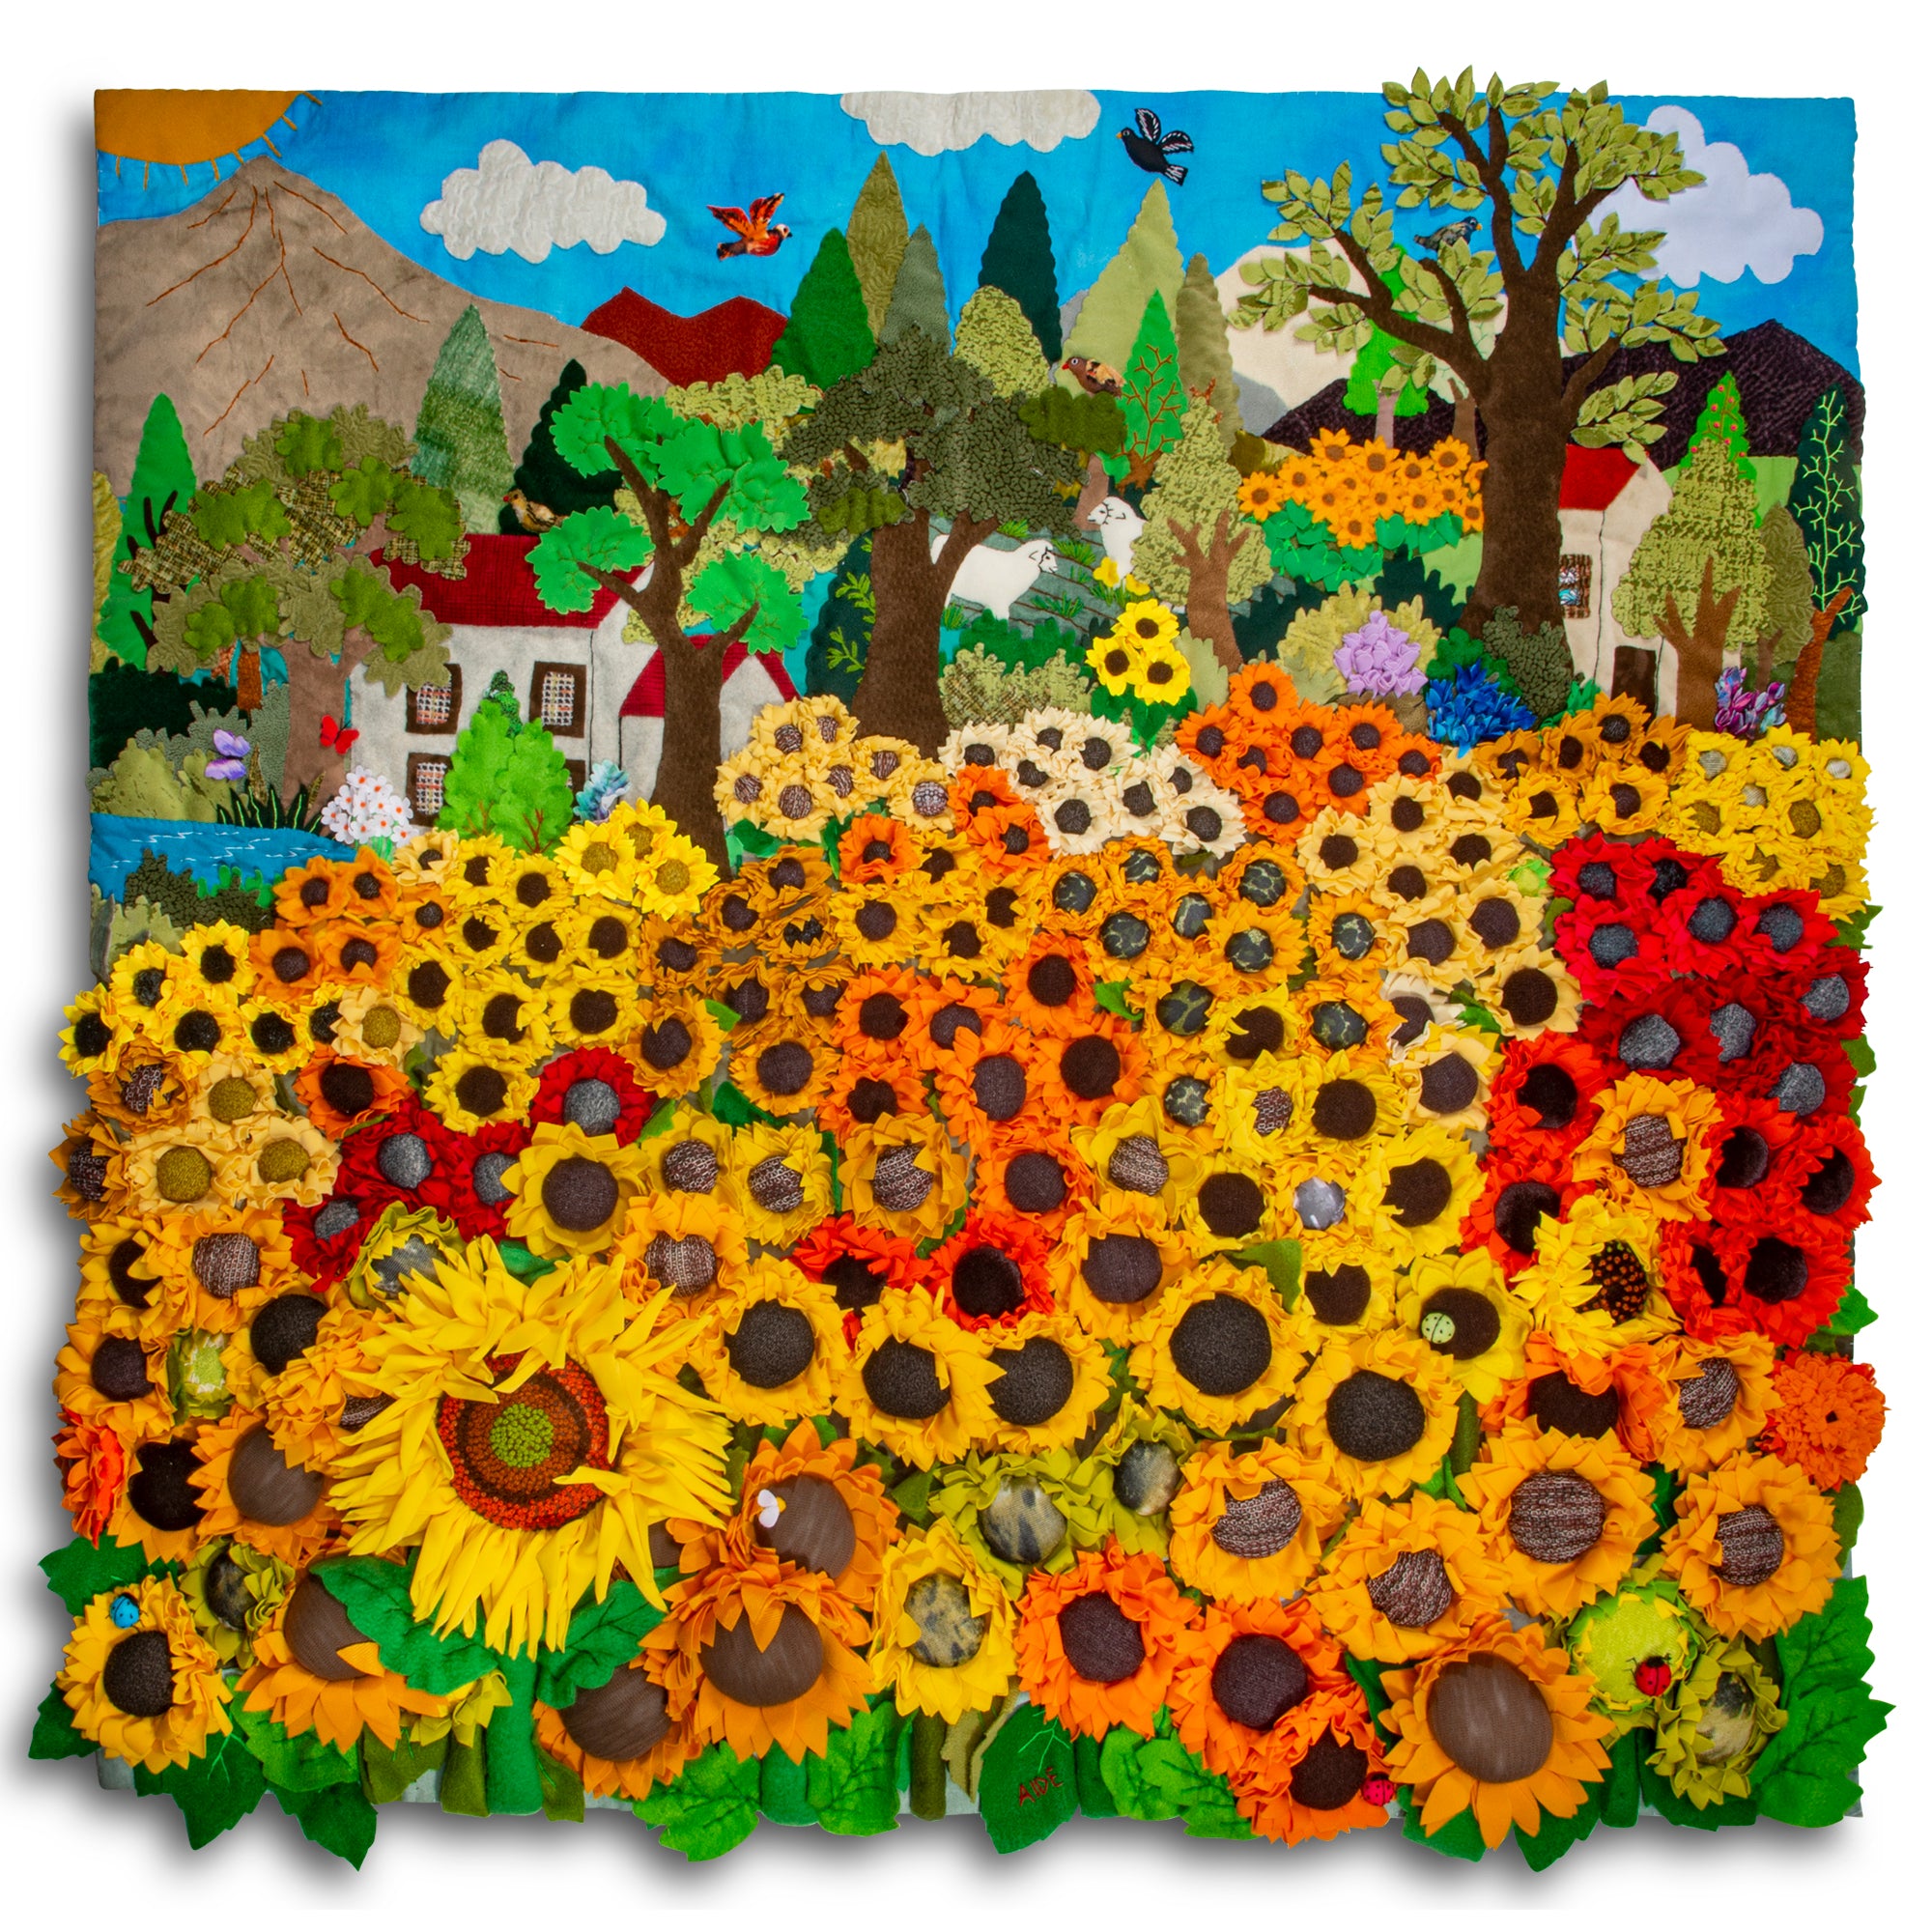 Sunflower Field - Square 36" 3-D Arpillera Art Quilt